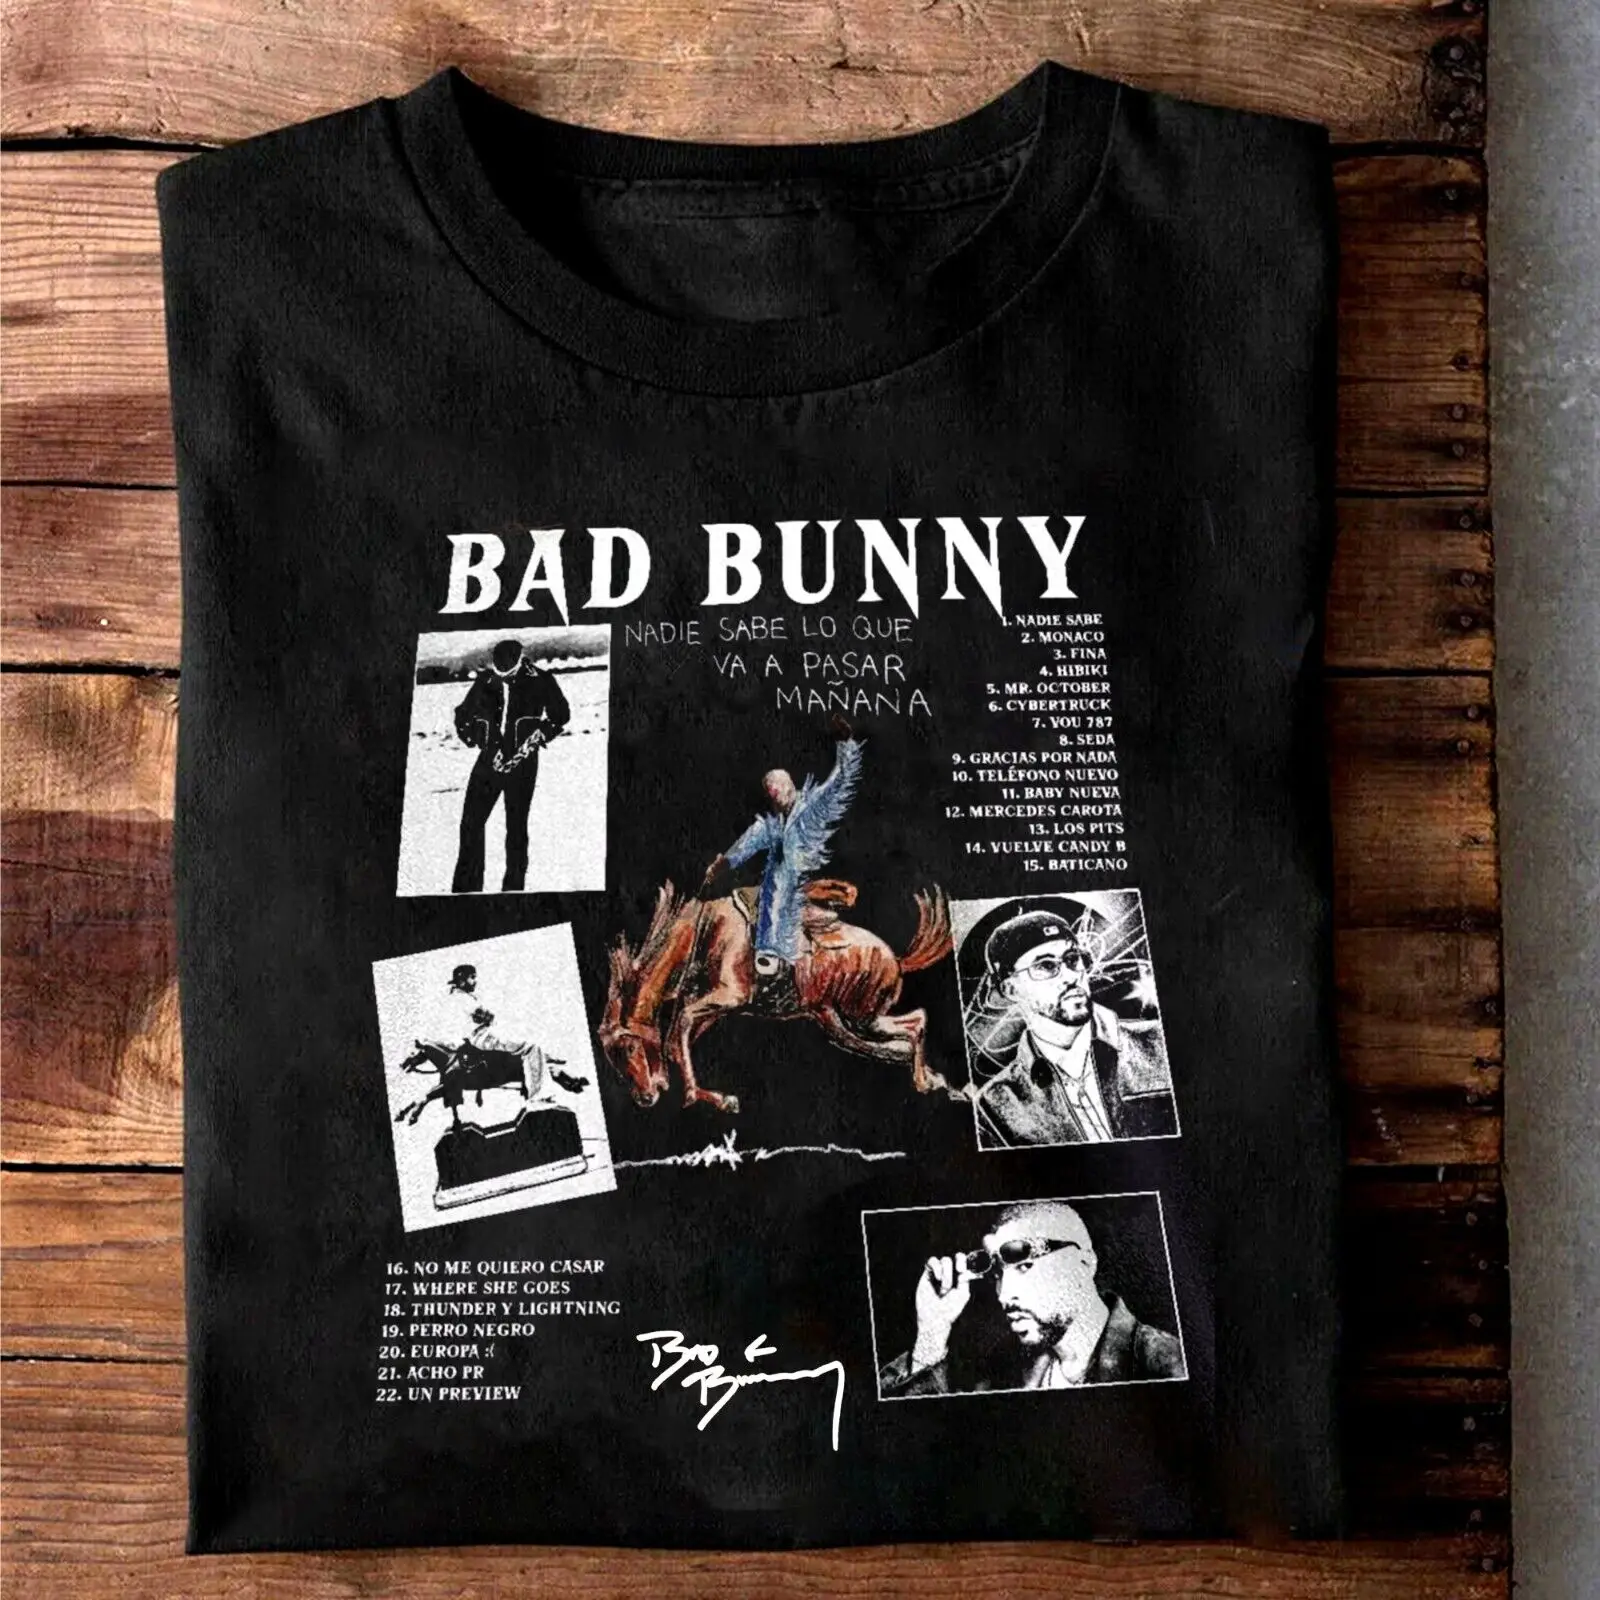 Футболка с горячим альбомом Bad Bunny, новая черная футболка всех размеров C1815